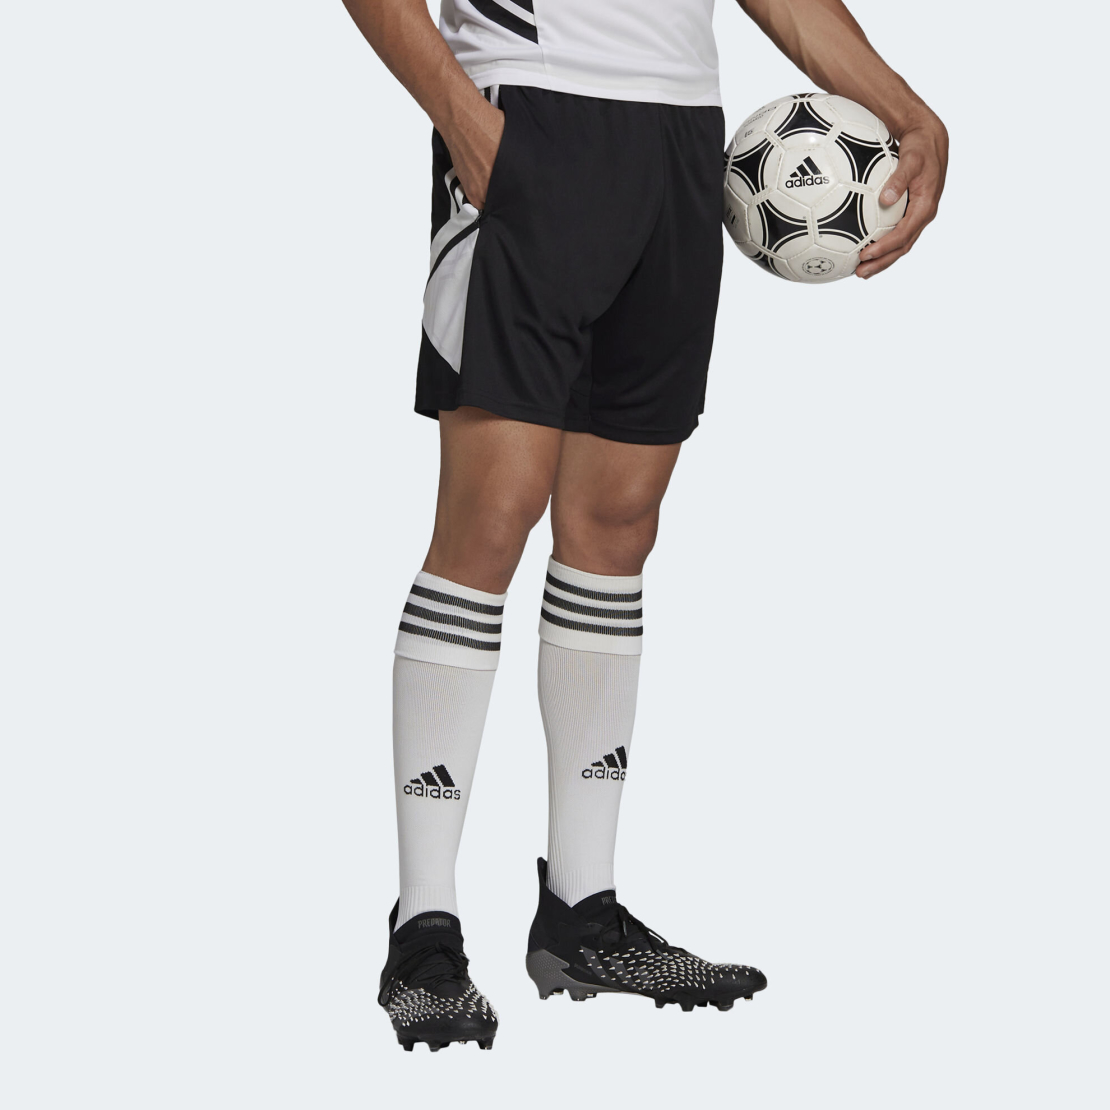 שורט כדורגל אדידס לגברים | Adidas Condivo 22 TR Shorts